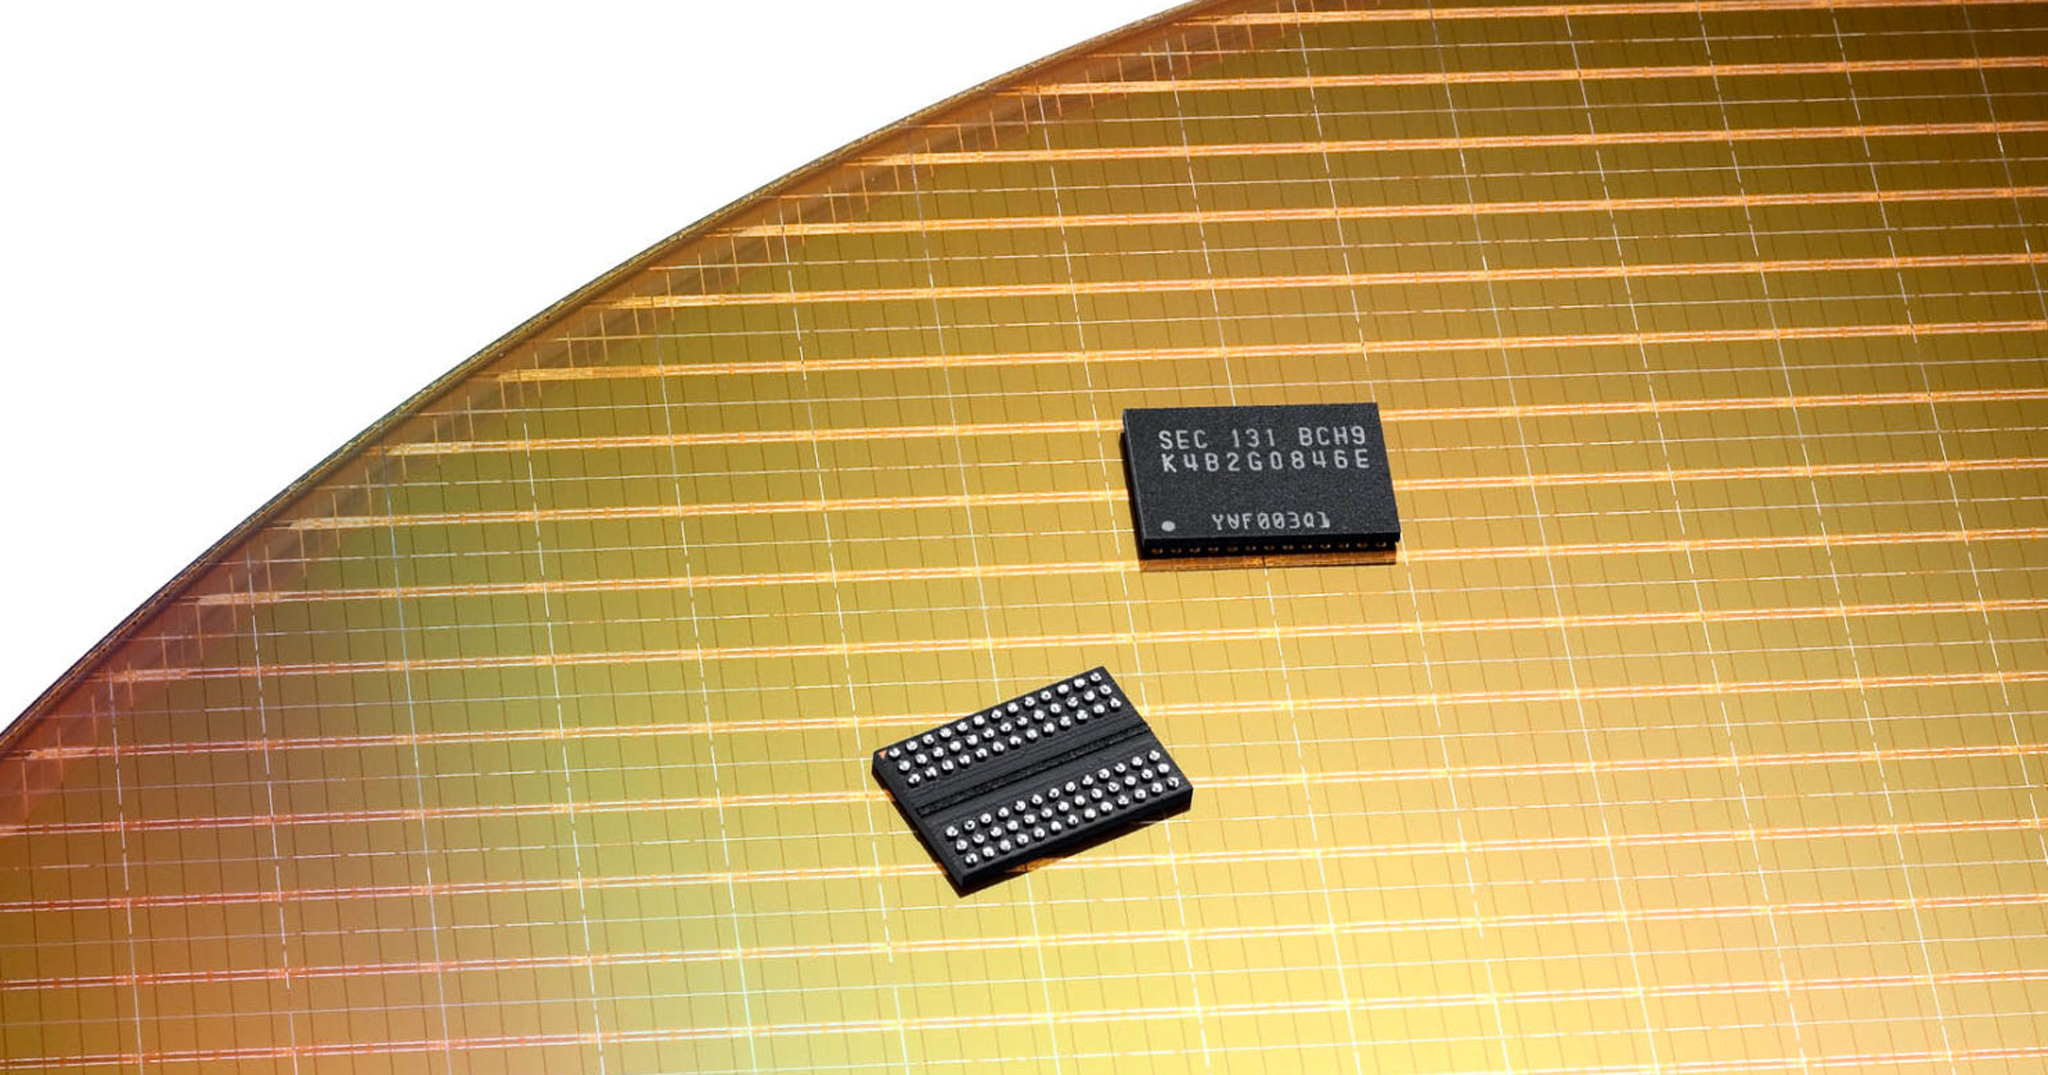 Samsung bắt đầu sản xuất chip nhớ UFS 3.0 và RAM LPDDR5, dùng cho Galaxy S10?